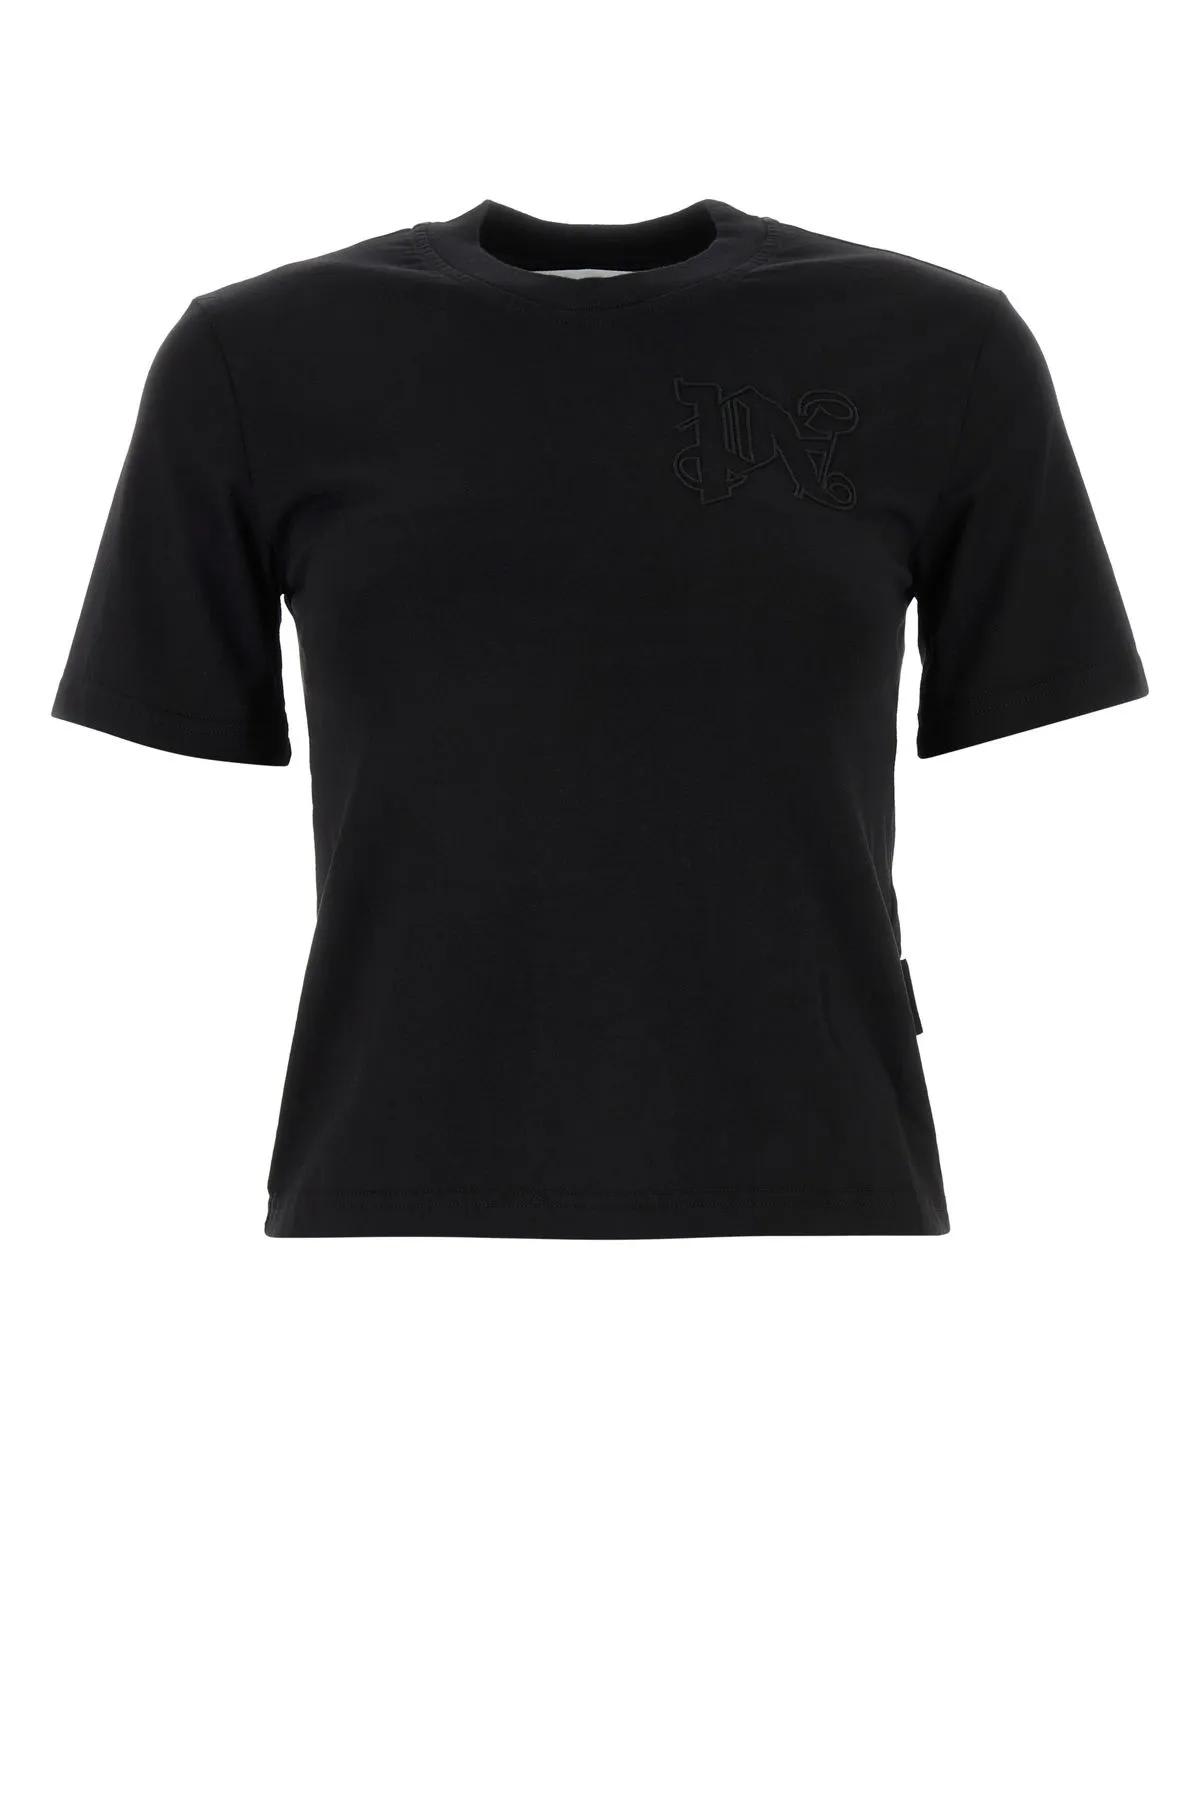 Palm Angels Black Cotton T-shirt